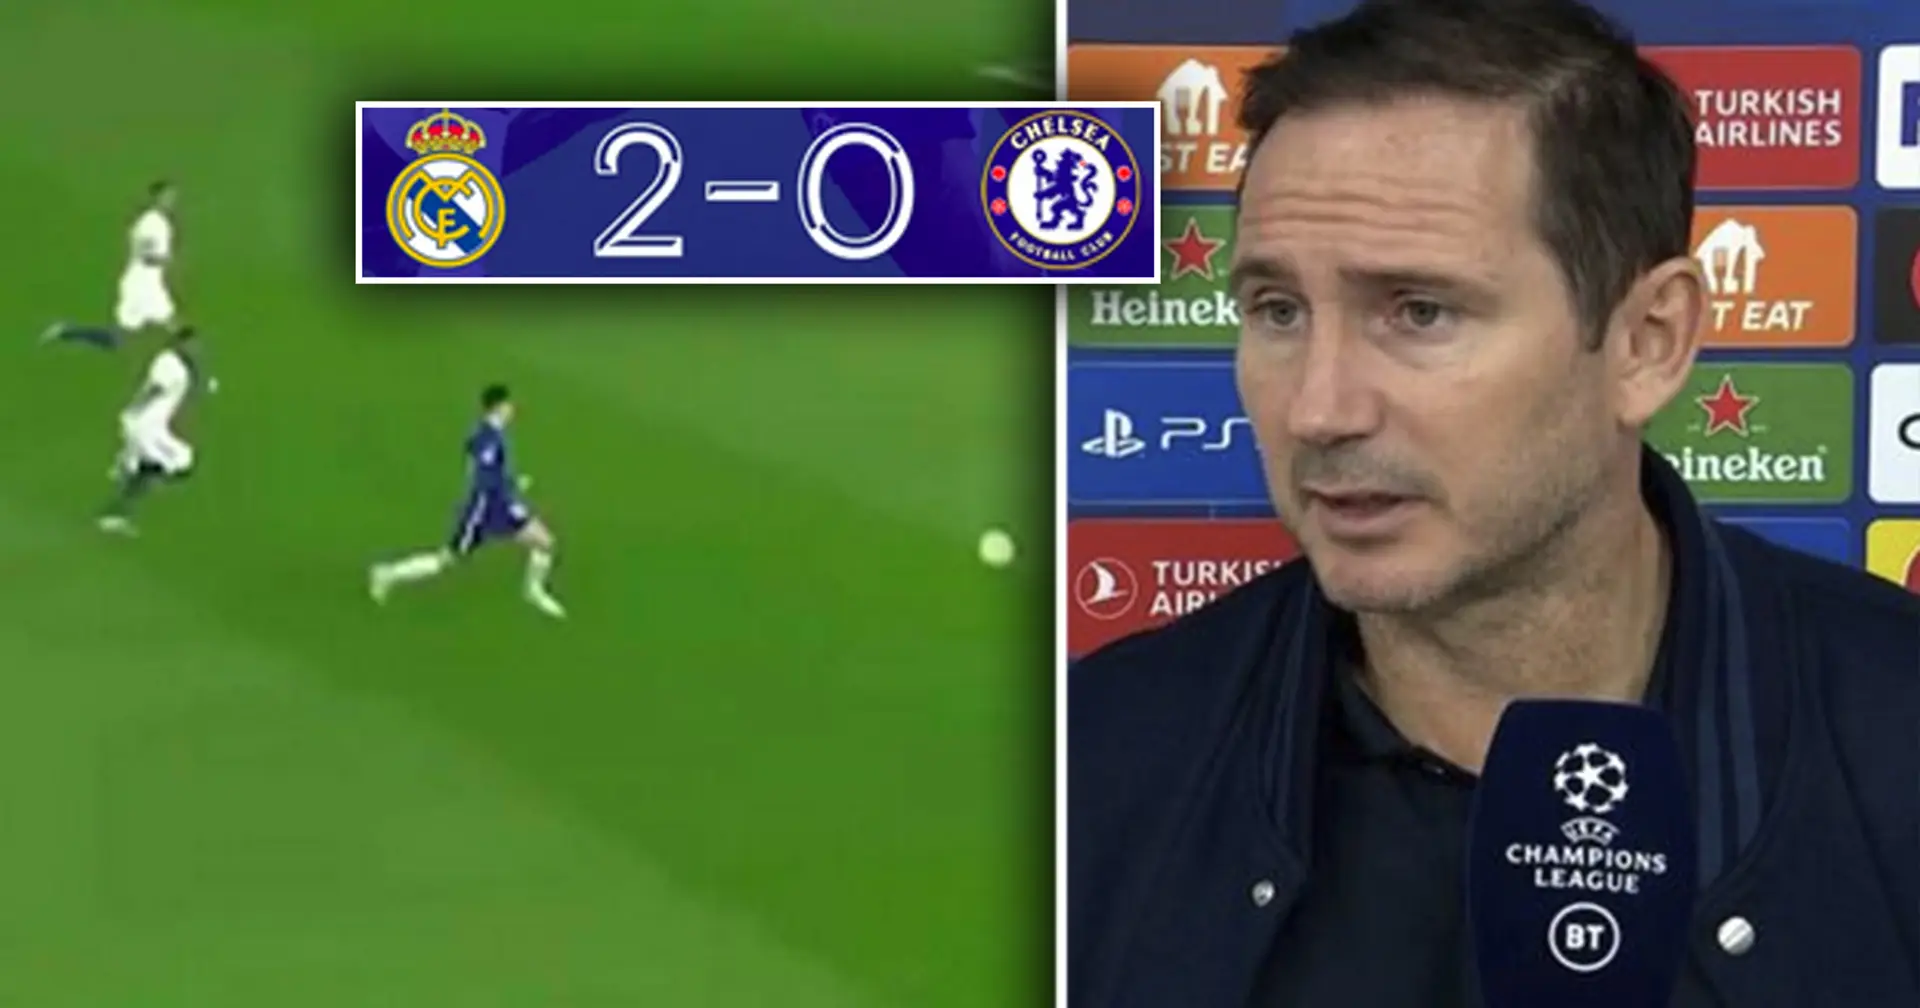 Qué marcador podría haber sido si Real Madrid y Chelsea hubieran anotado todas sus oportunidades: analizado con estadísticas